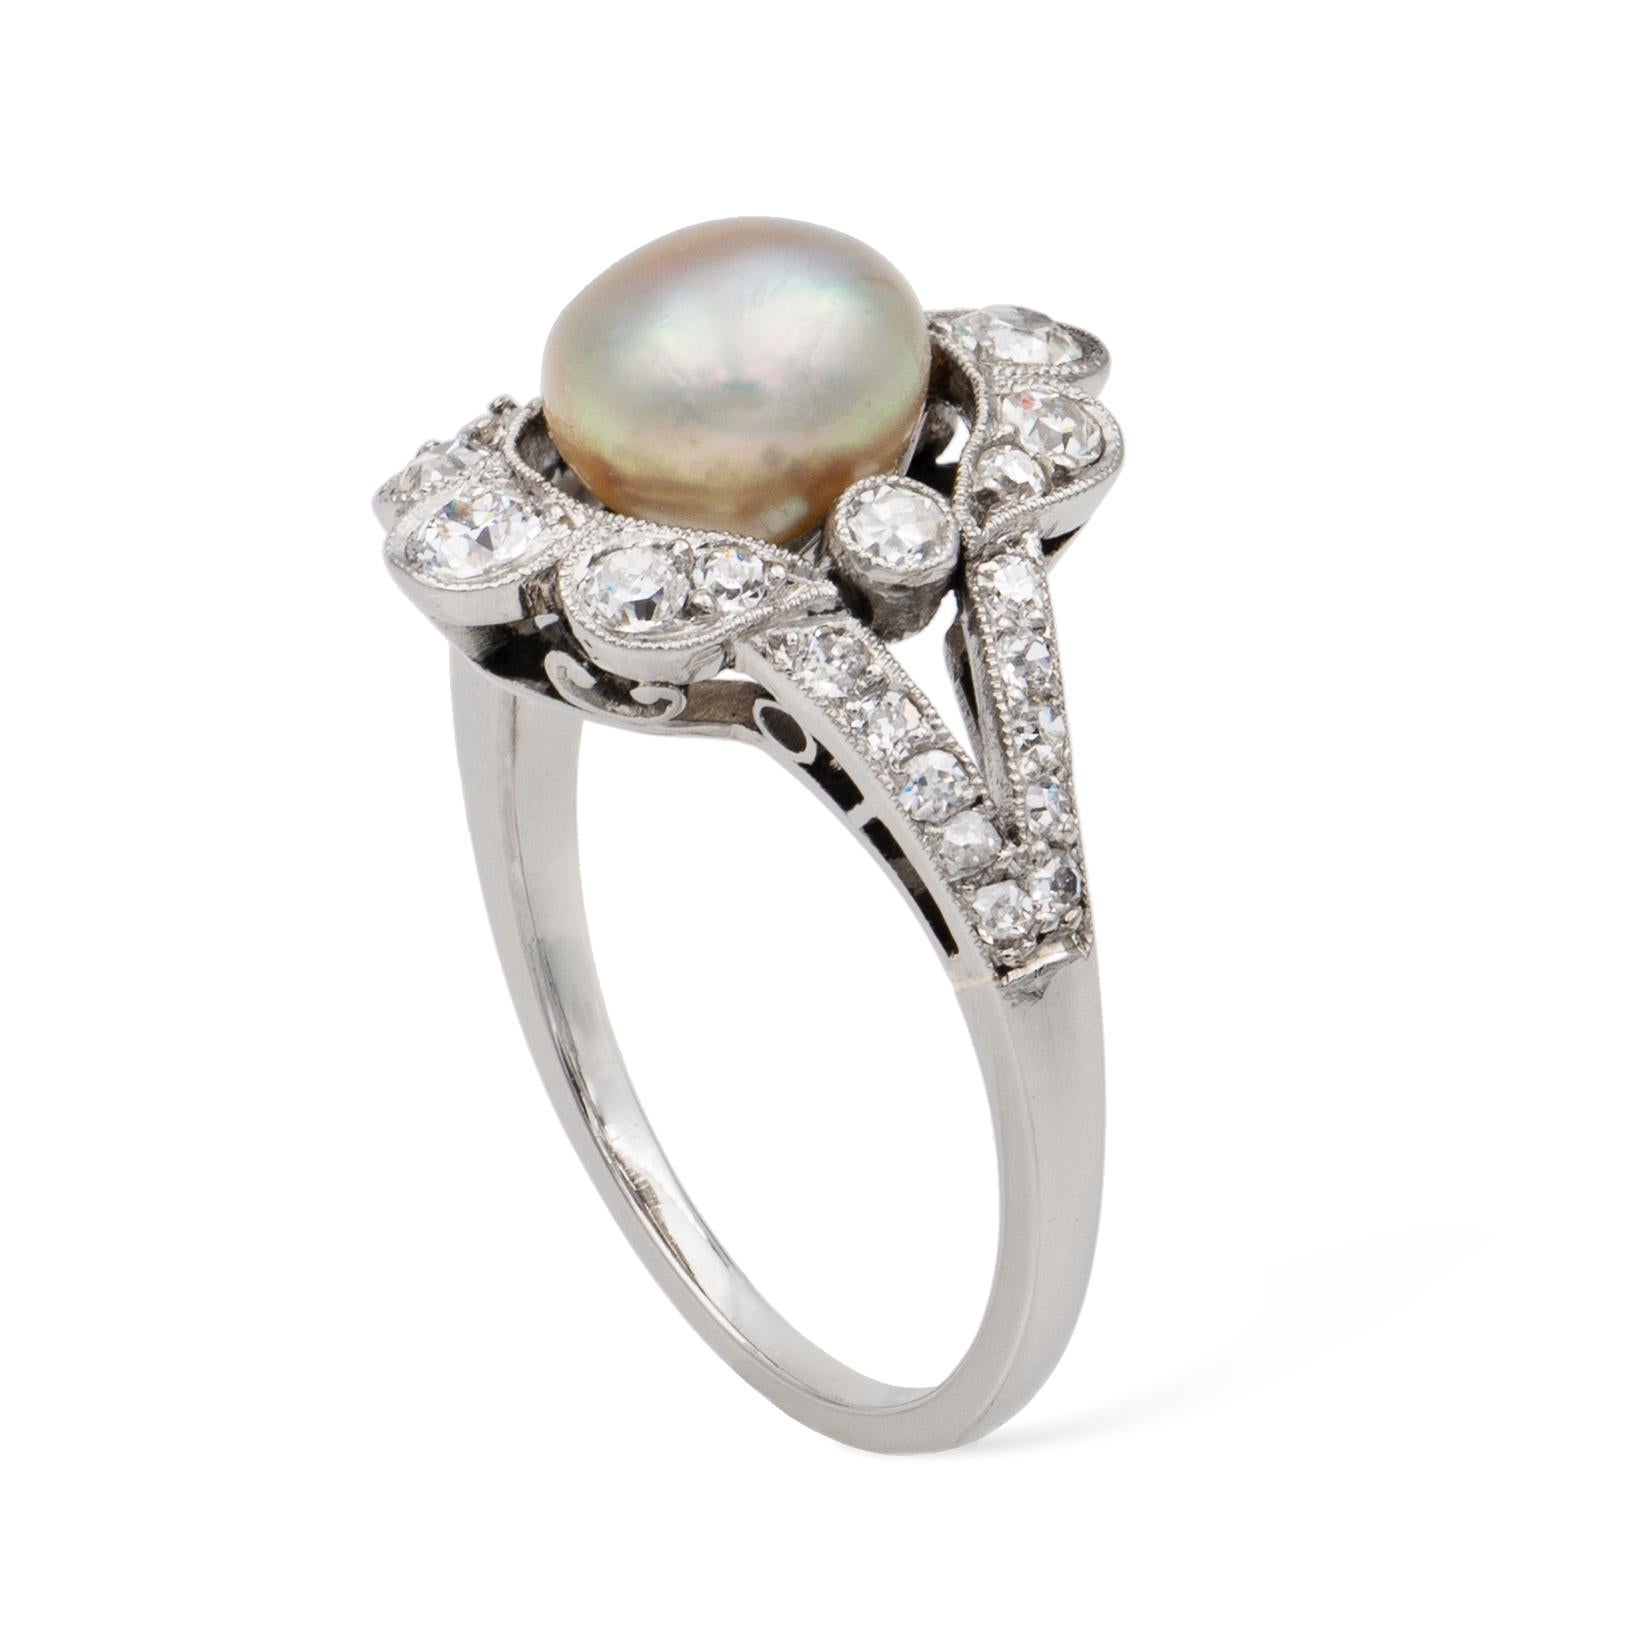 Belle-Époque-Ring aus Naturperlen und Diamanten, in der Mitte eine knopfförmige Perle mit den Maßen 6,8 x 5,1 mm, begleitet vom GCS-Bericht 79217-37, der besagt, dass es sich um eine Naturperle aus Salzwasser handelt, umgeben von Altbrillanten und